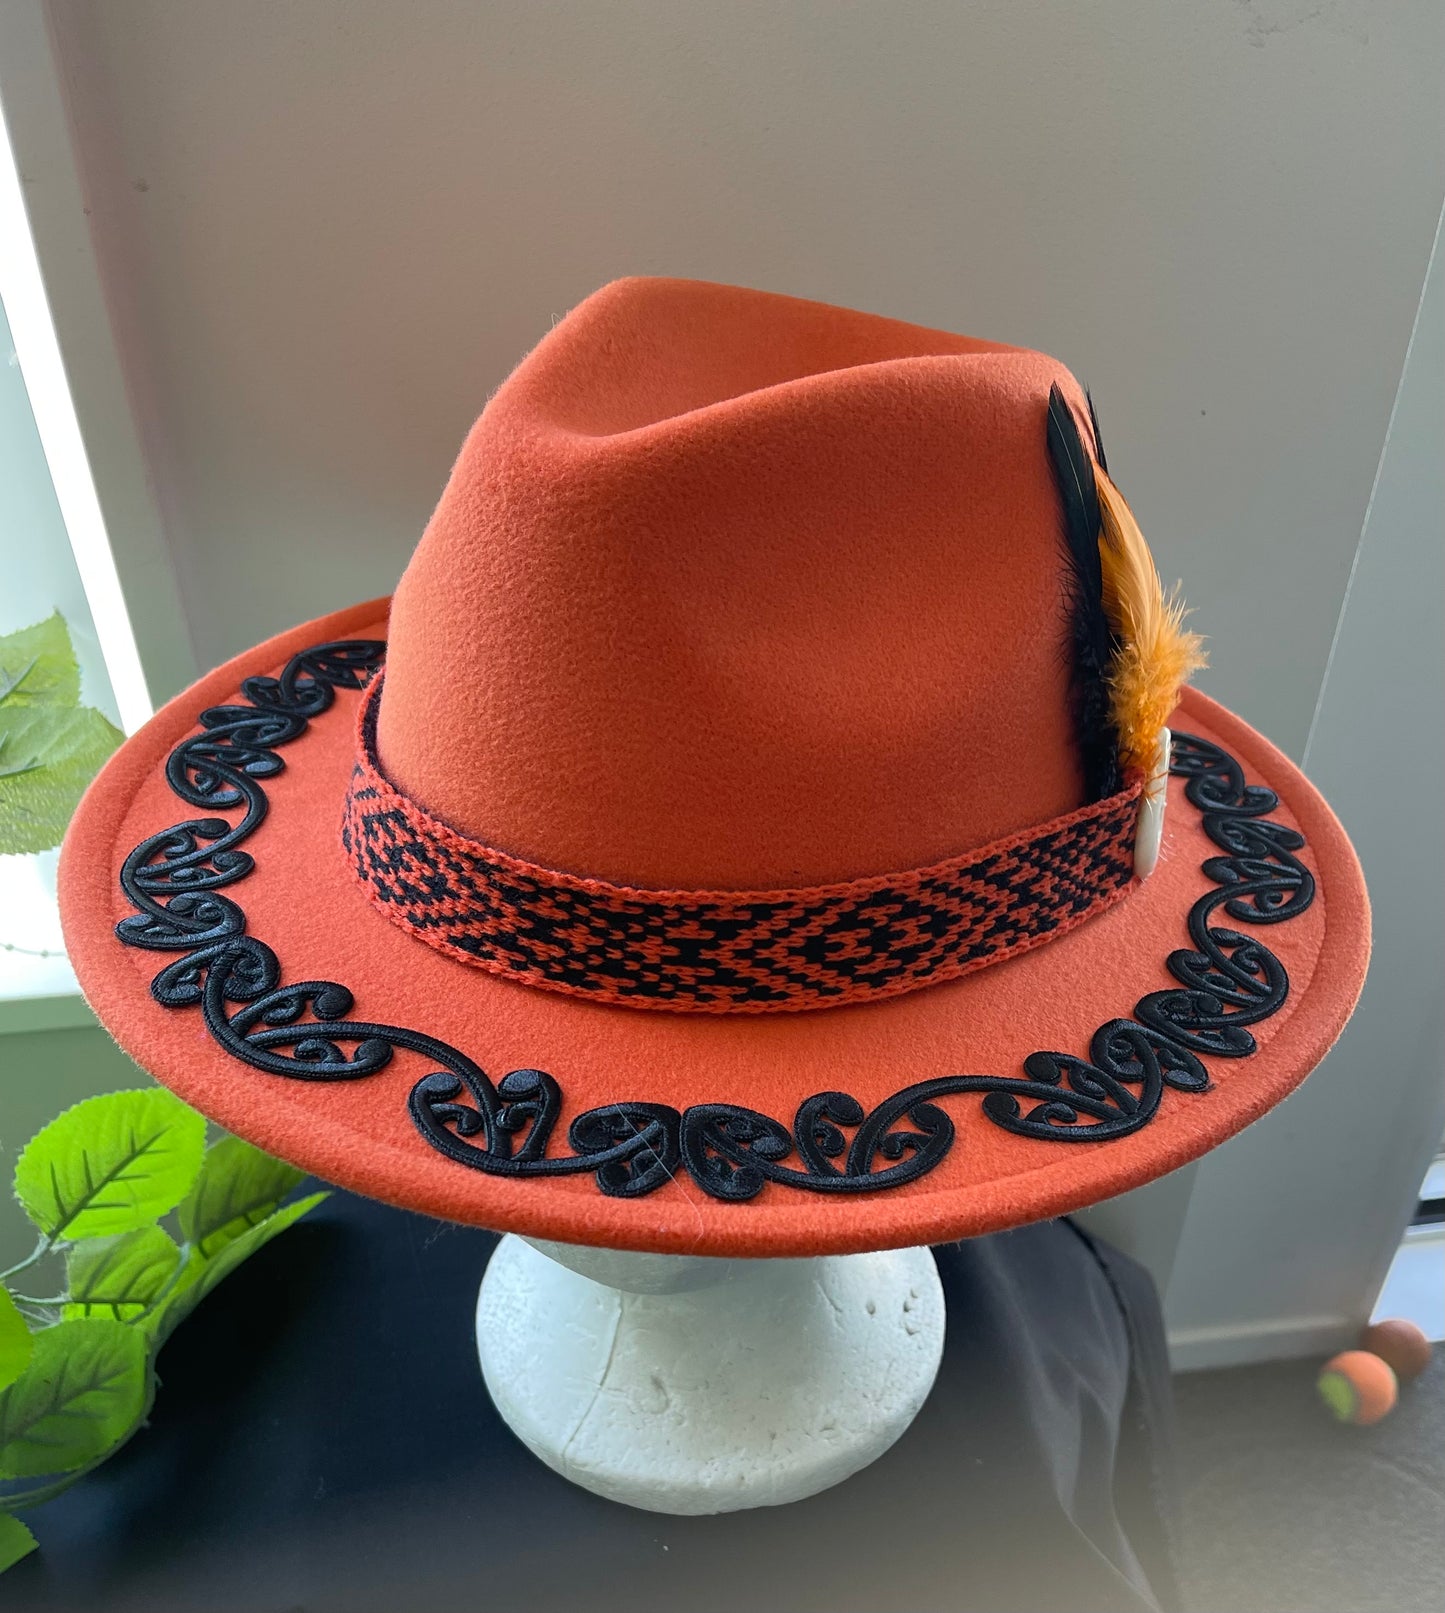 Potae - Orange Fedora Felt Hat